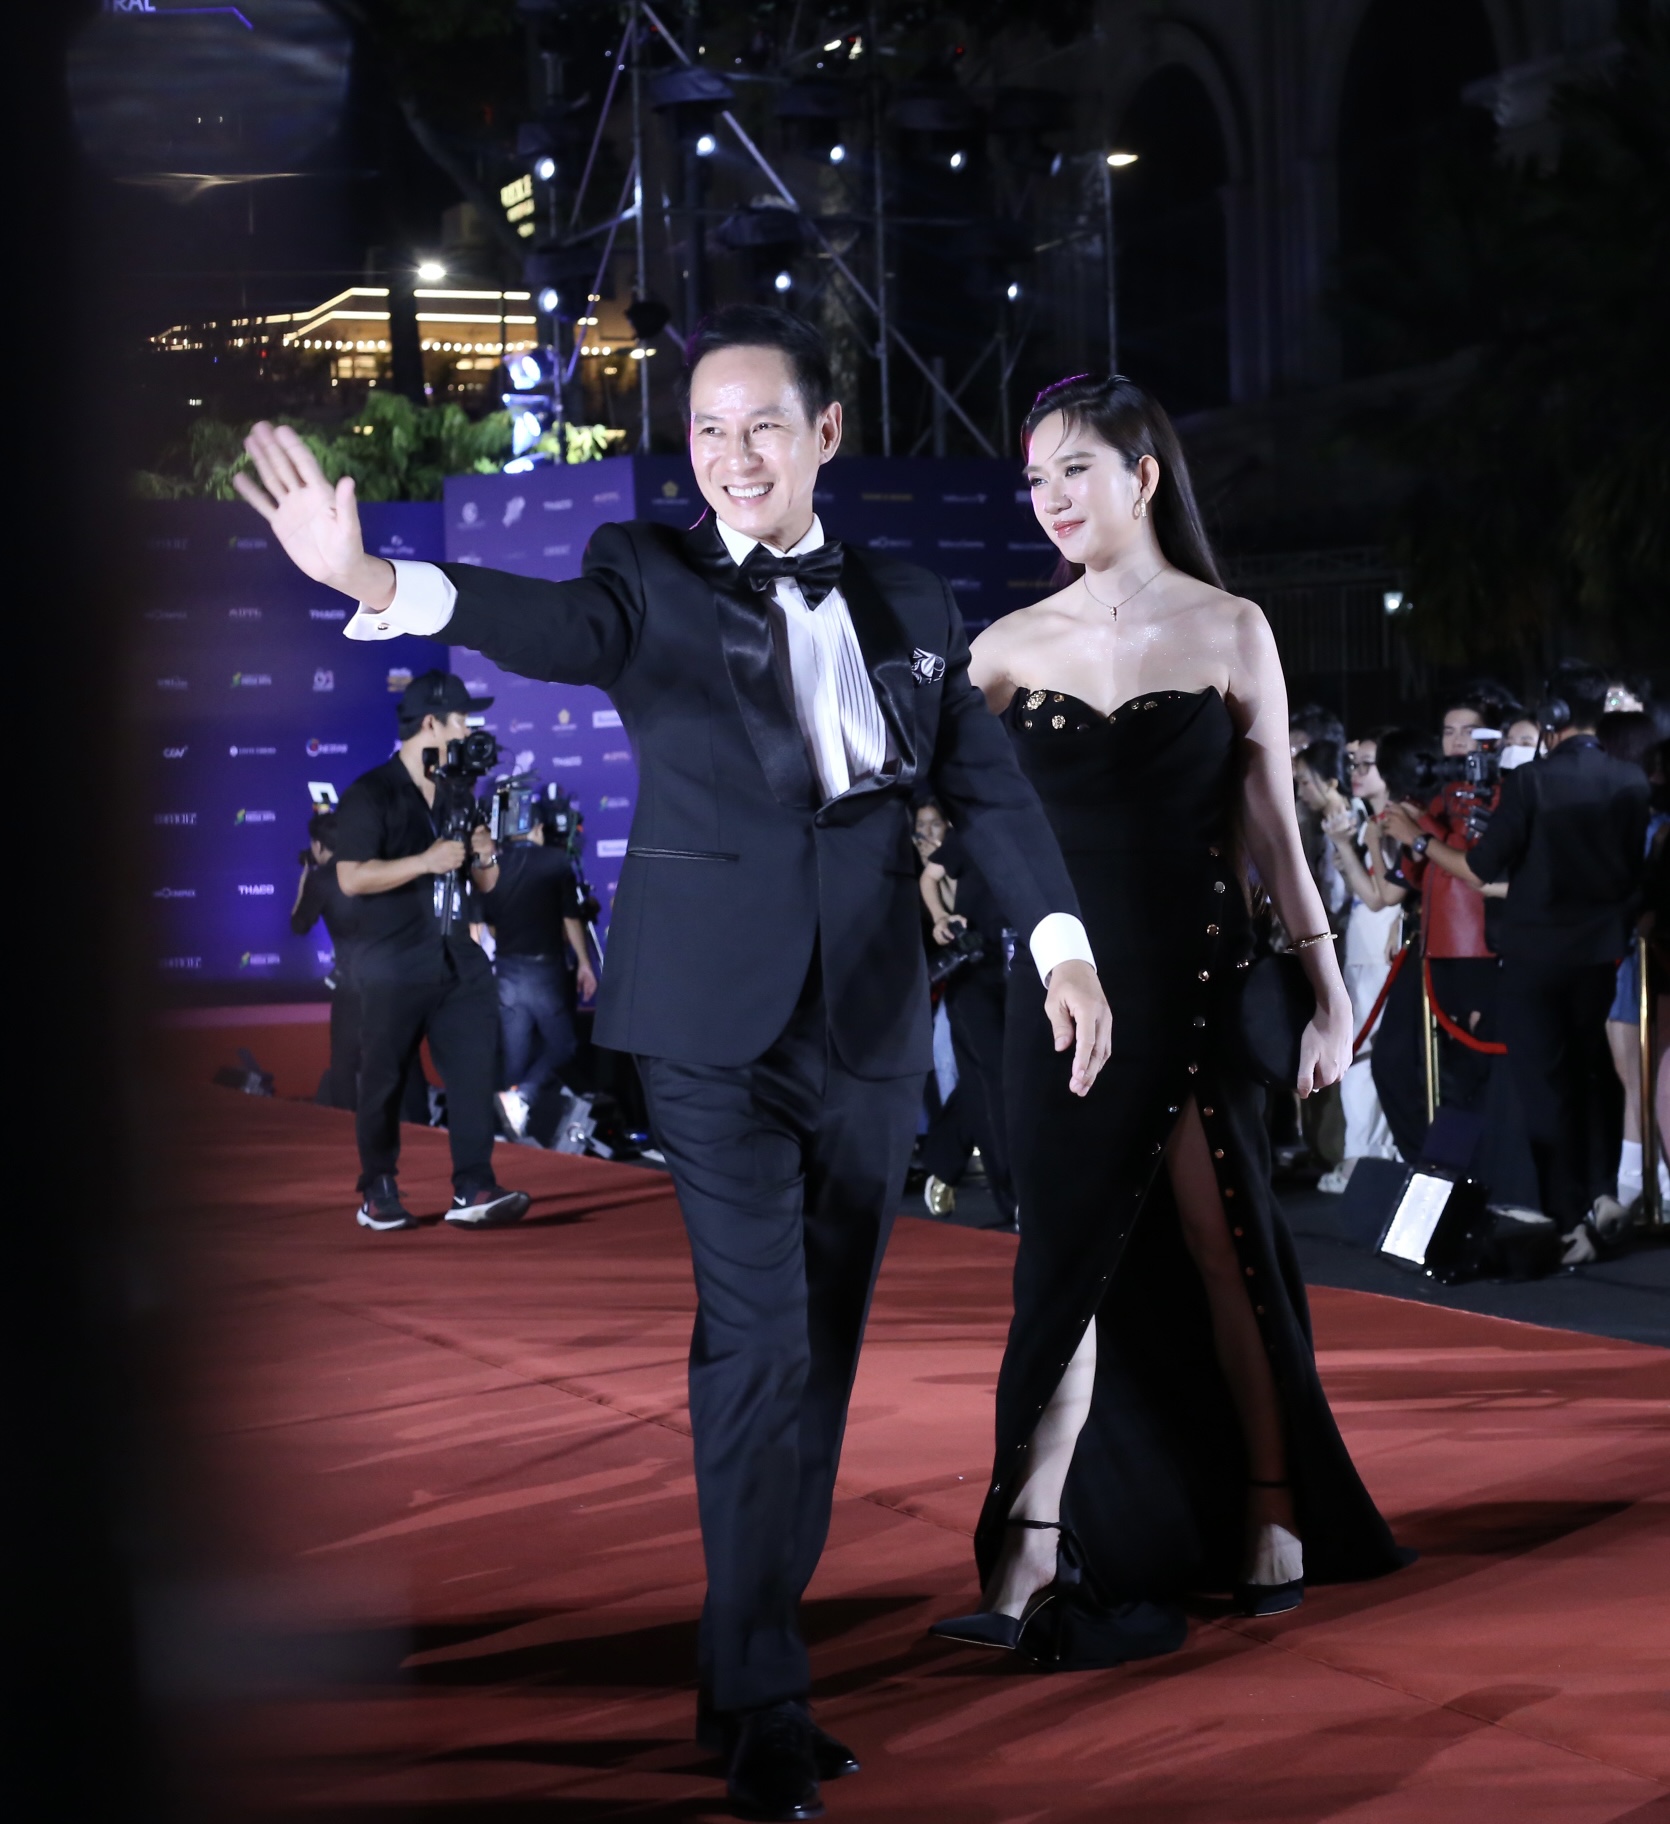 Vợ chồng đạo diễn, nhà sản xuất Lý Hải, Minh Hà vẫy chào khán giả. Cả hai mặc đồng điệu màu sắc